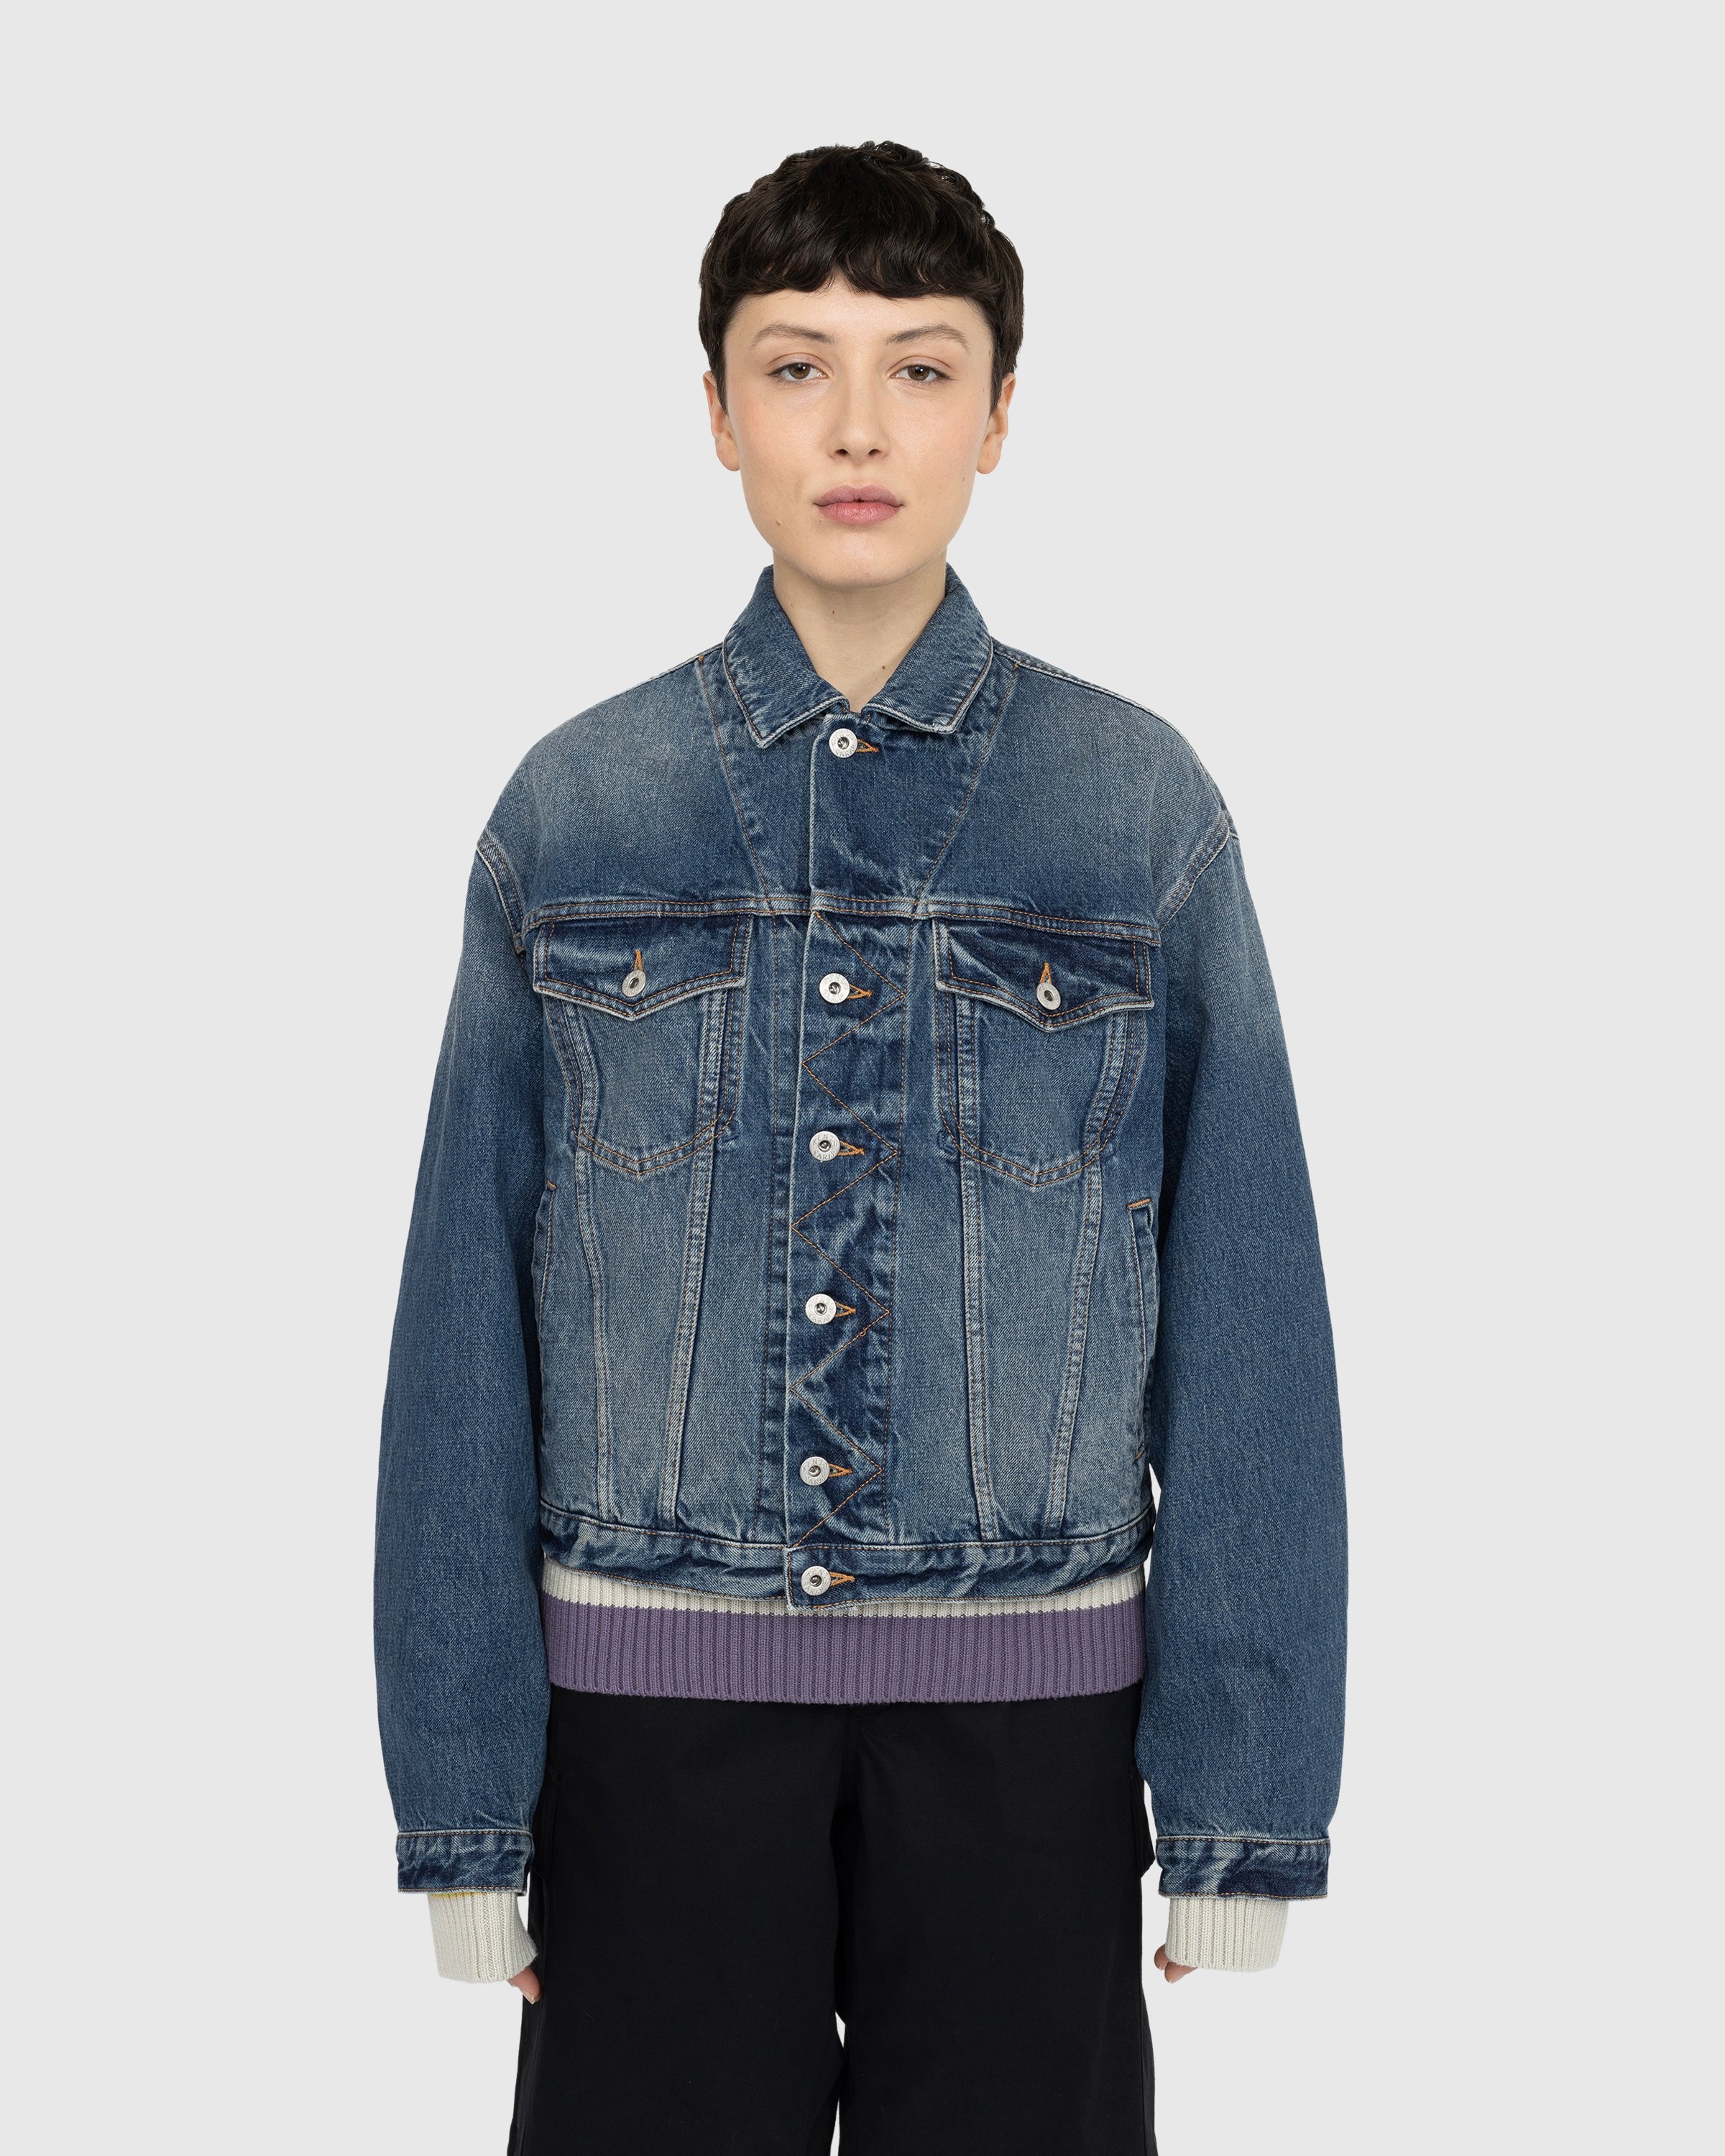 Kenzo – Denim Trucker Jacket - Outerwear - Blue - Image 2